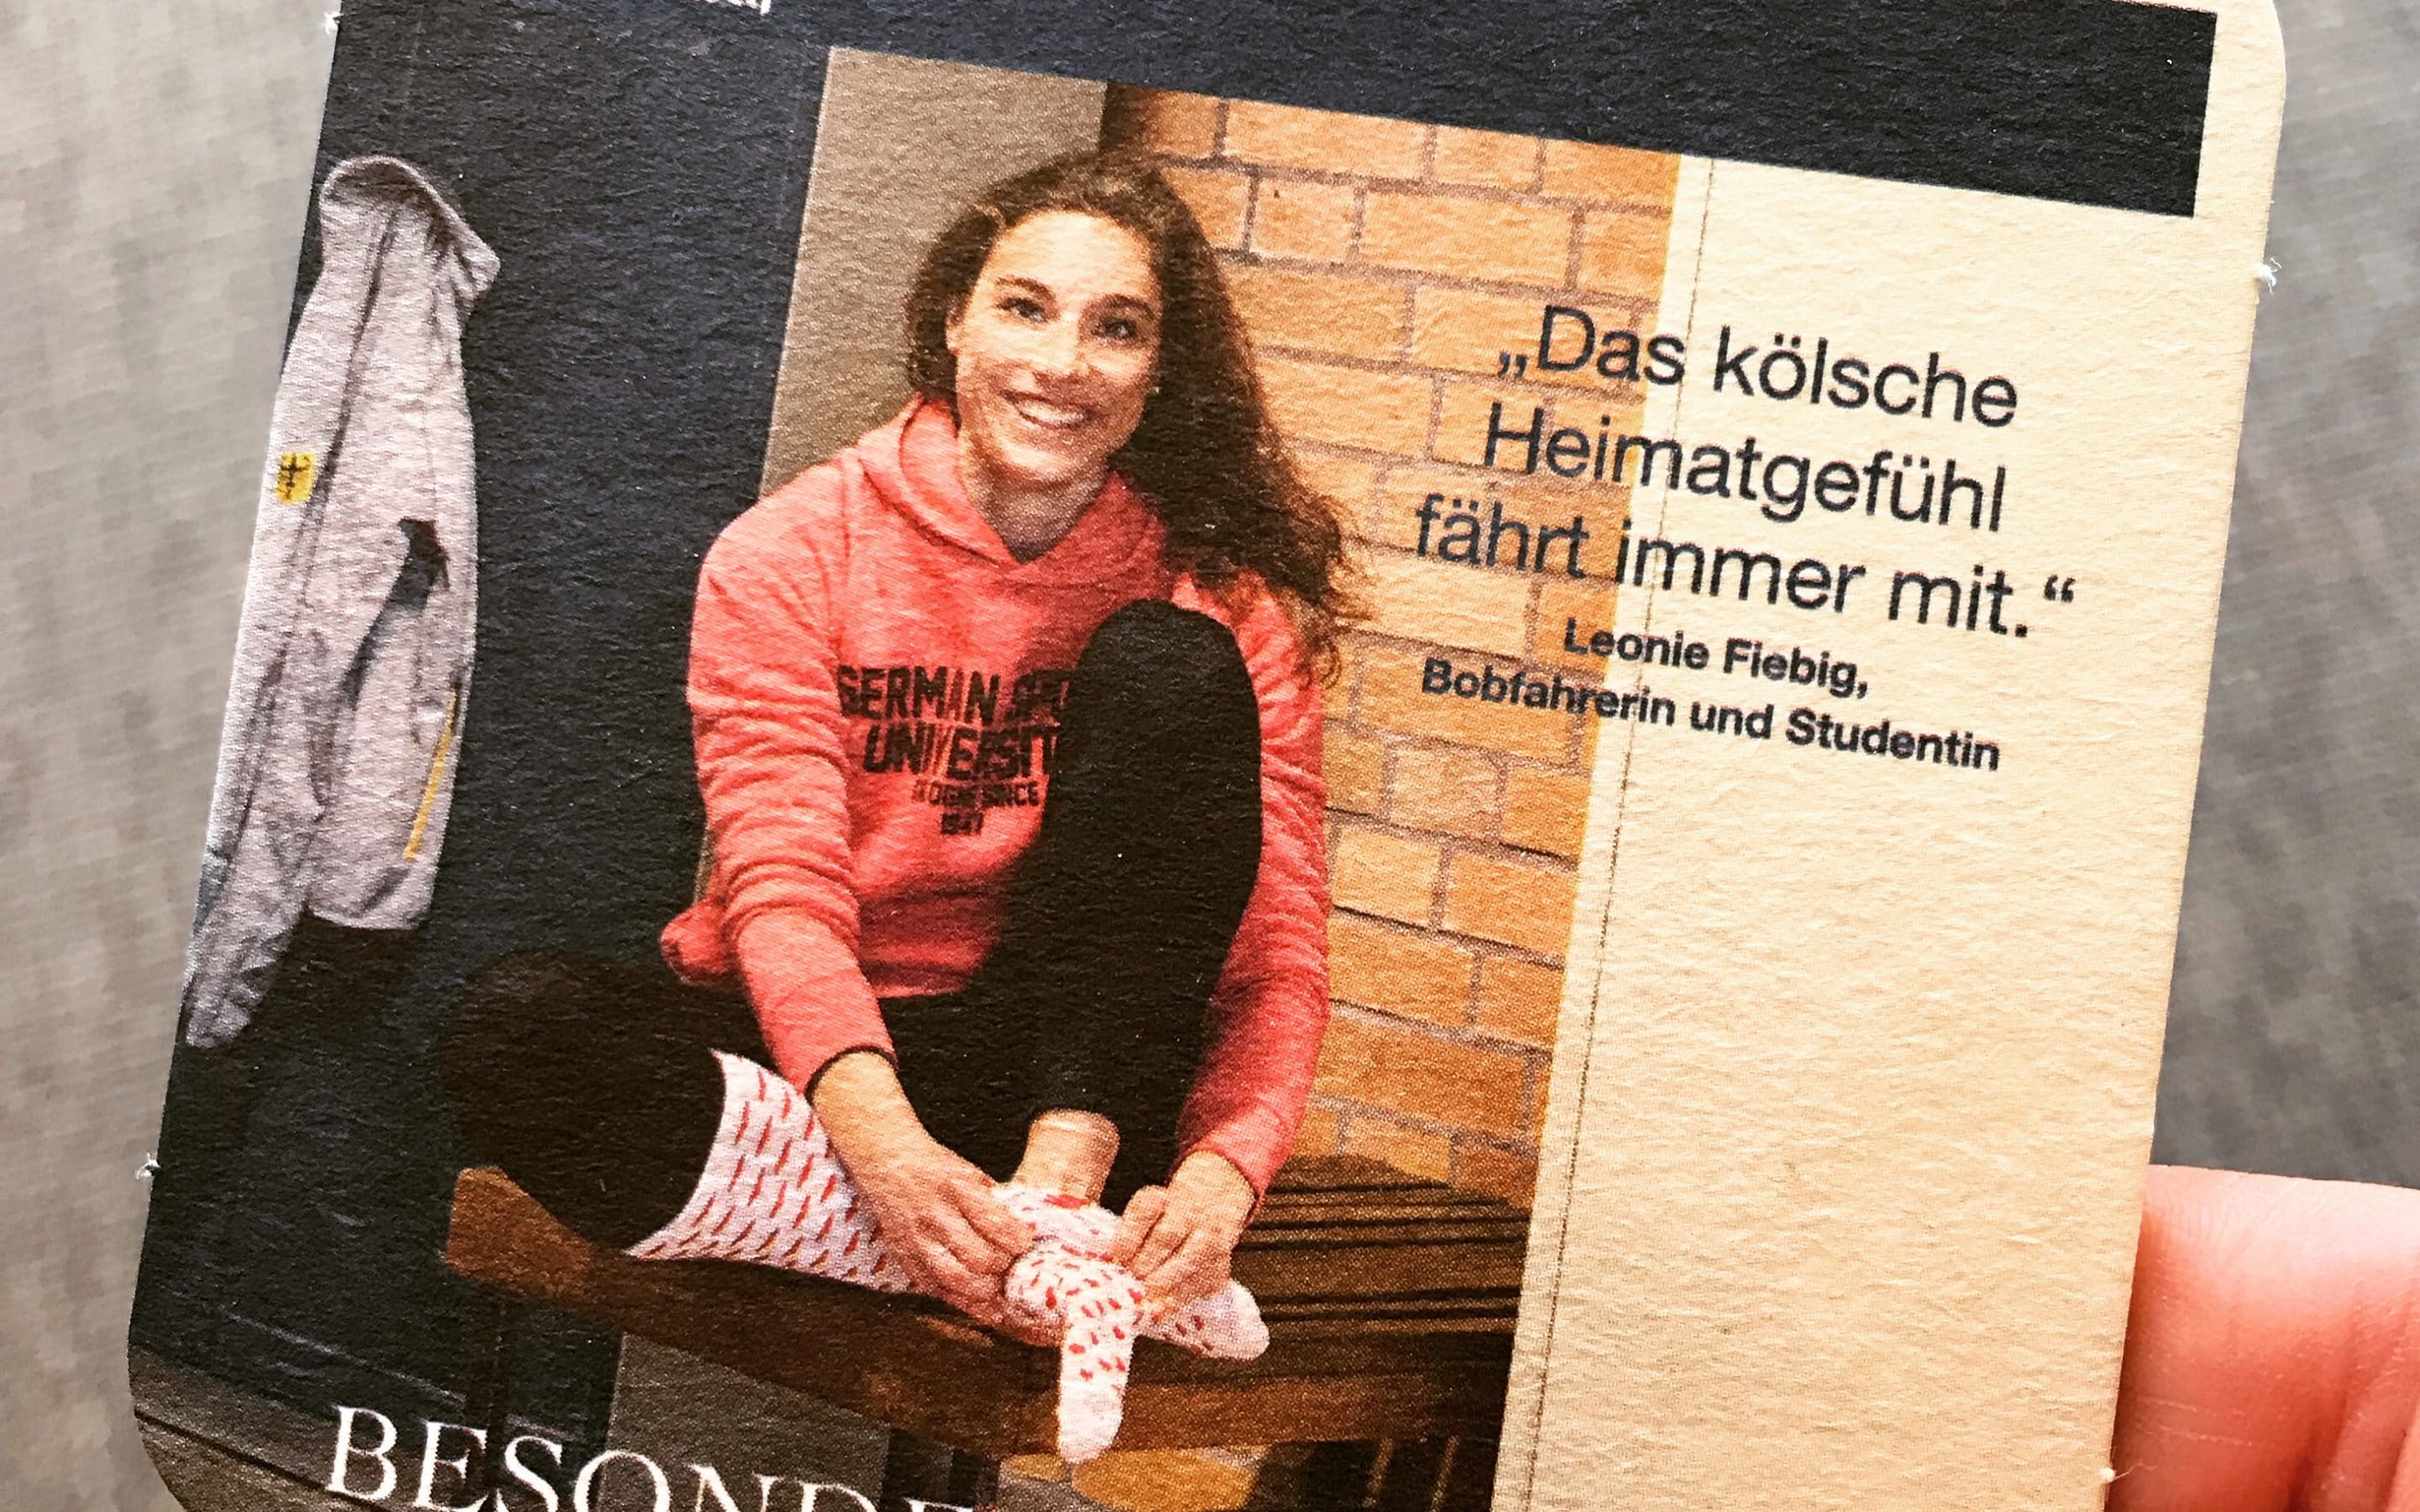 Kölns einzige Bobsportlerin Leonie Fiebig startet bei der WM und feiert mit Gaffel Kölsch